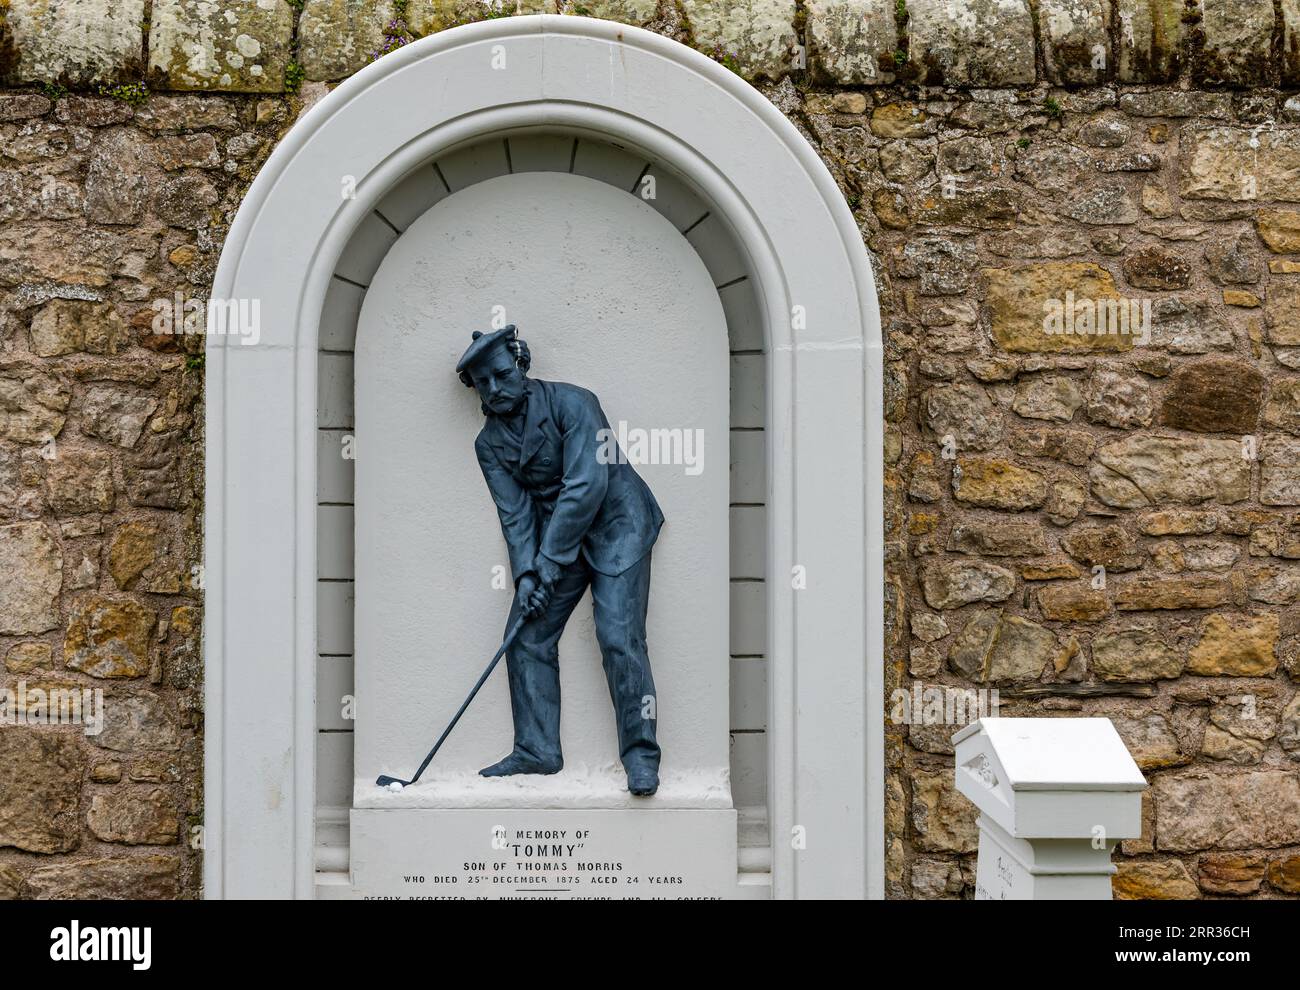 Mémorial mural à Tommy Morris, golfeur professionnel, cimetière de la cathédrale St Andrews, Fife, Écosse, Royaume-Uni Banque D'Images